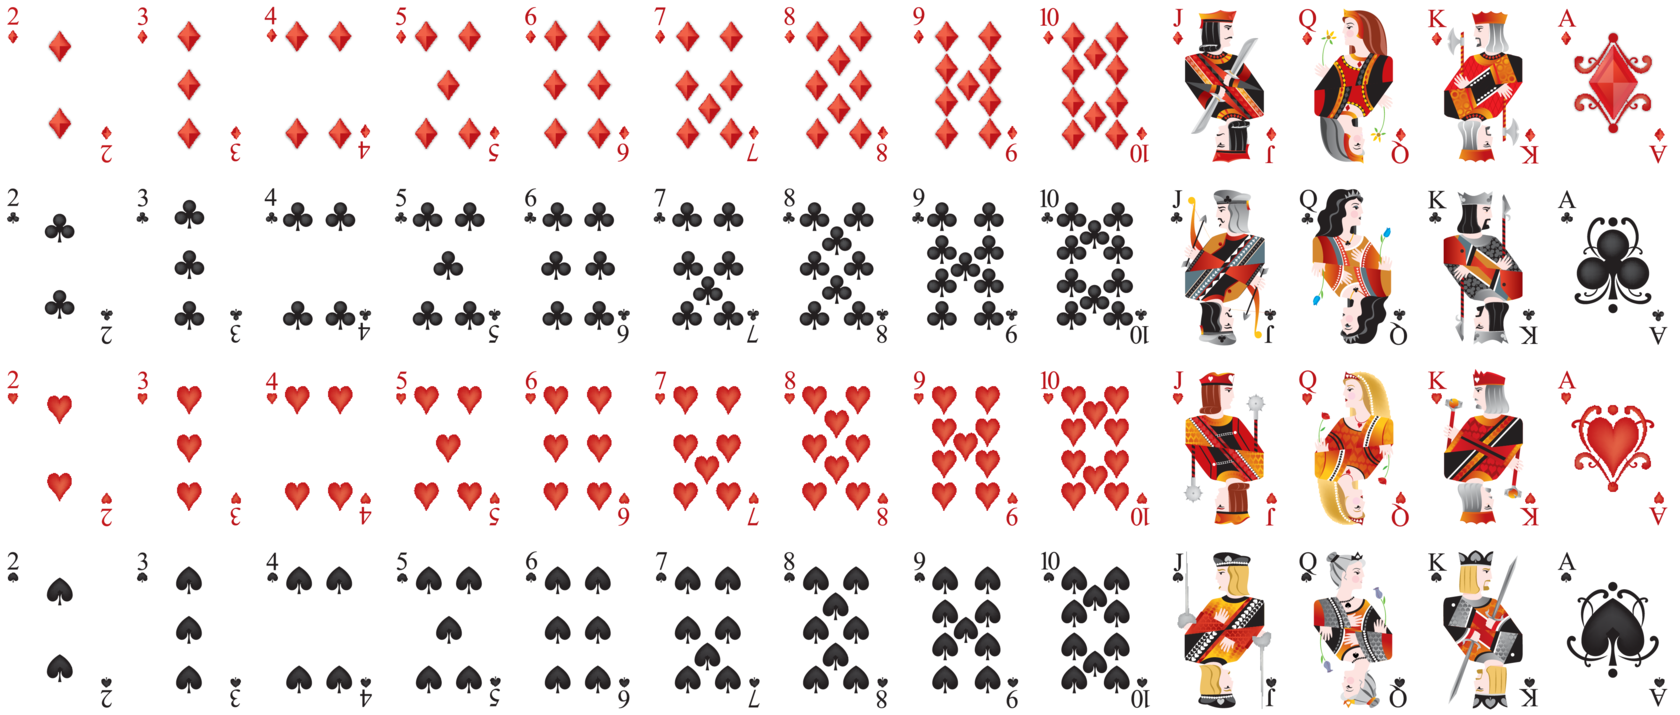 Карты ка 2. Покер колода 52 карты. Игральные карты Покер колода. Колода карт 52 Poker playing Cards Standard. Игральные карты колода 54.